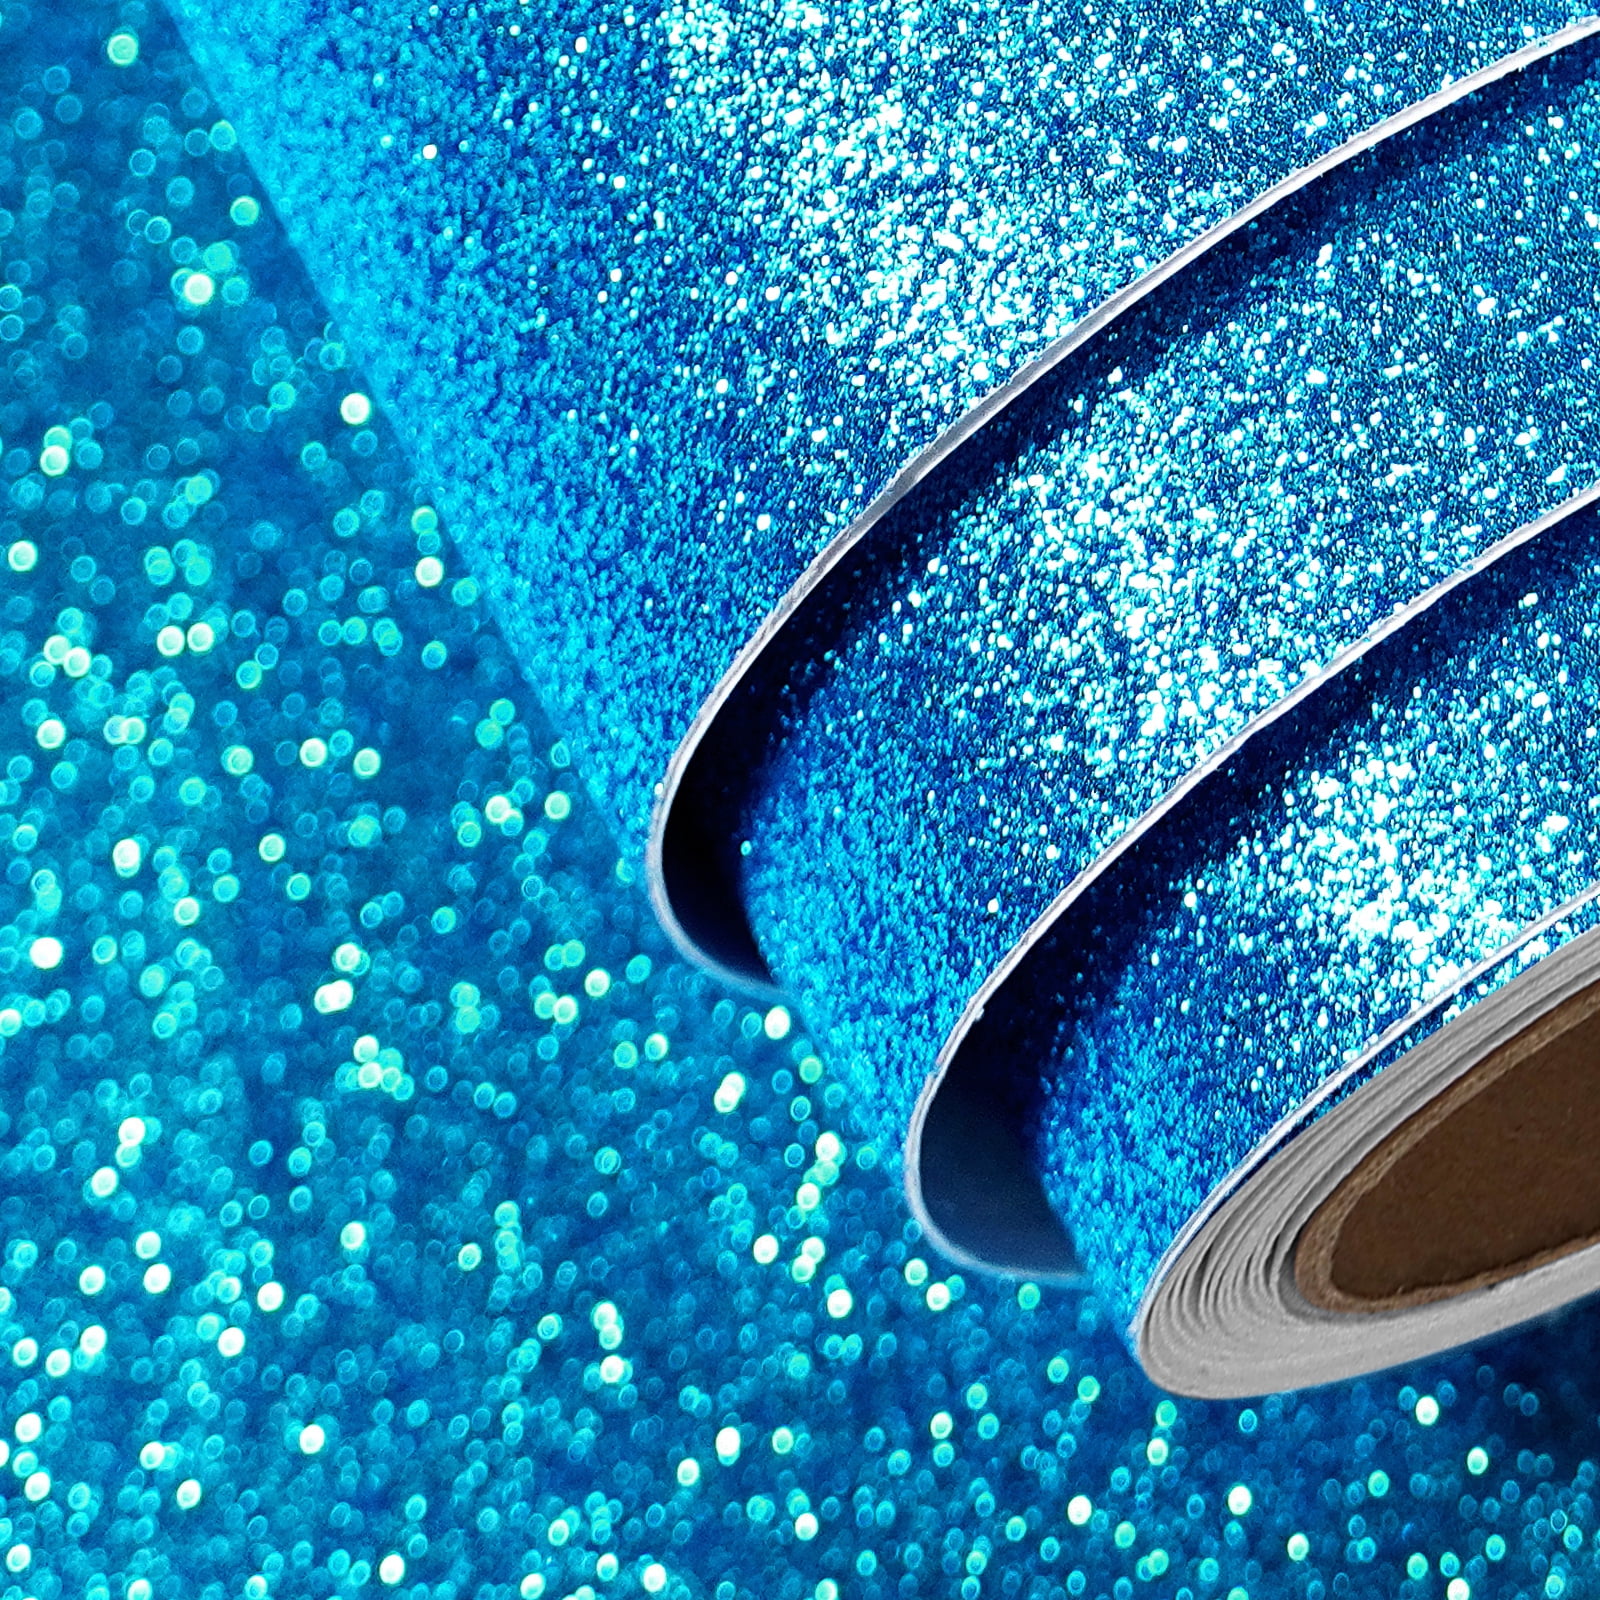 Glitter Cardstock Ocean Blue 8 1/2 x 11 81# Cover Sheets Bulk Pack of 10